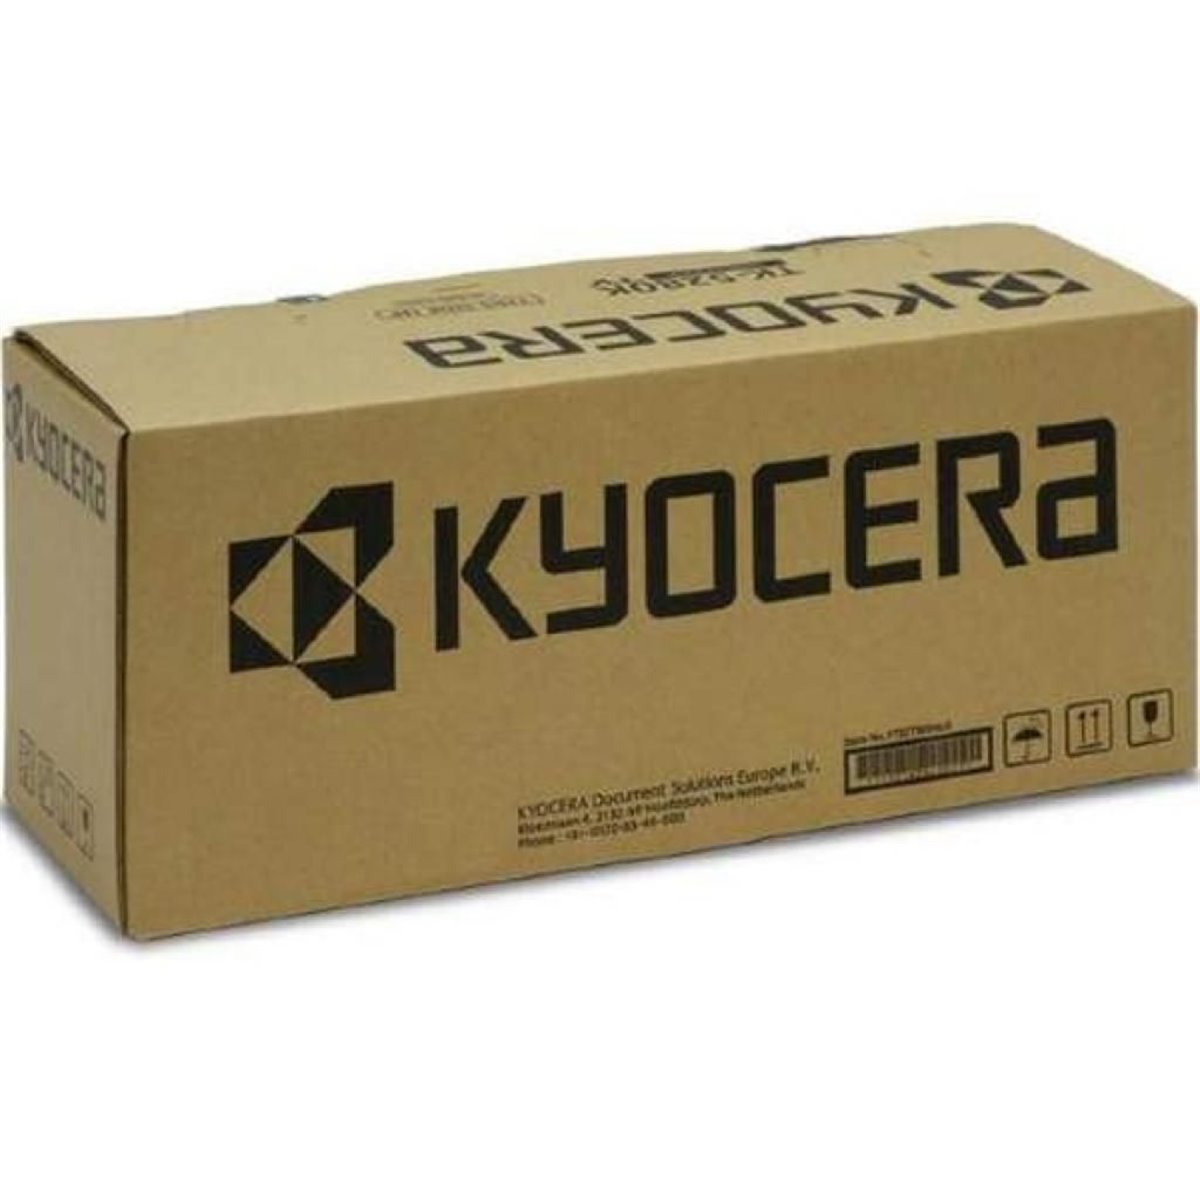 Kyocera FK 440 - Kit für Fixiereinheit - für FS-6950DN, 6950DTN